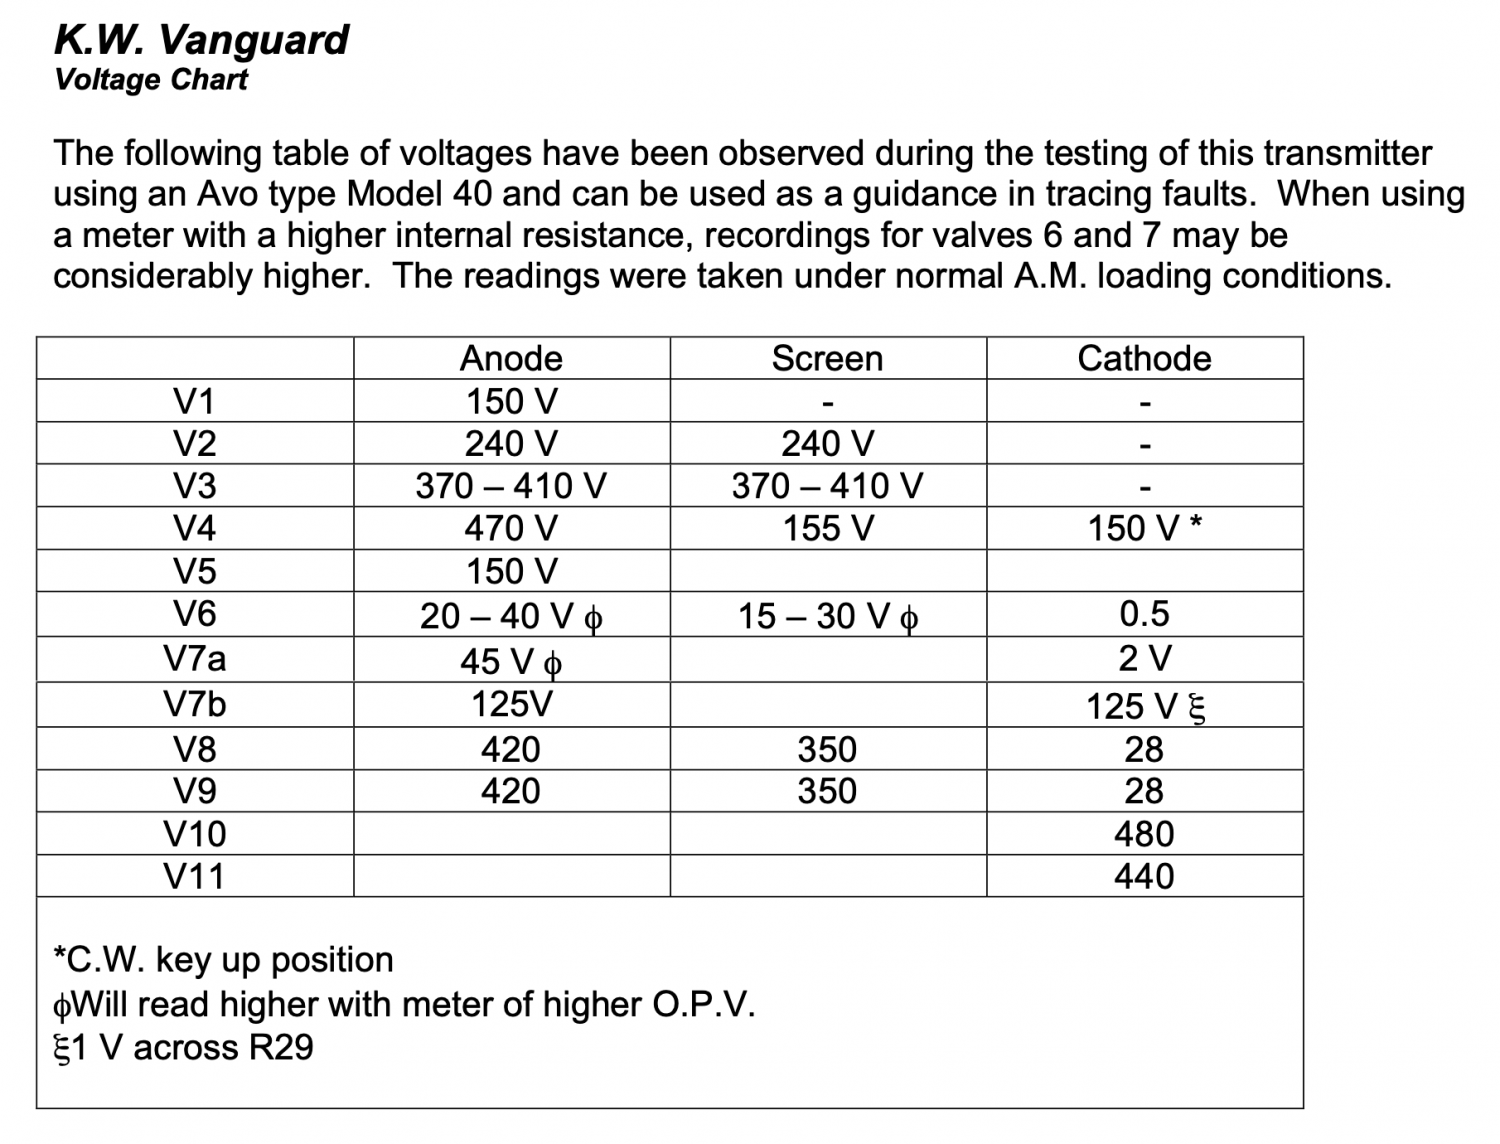 KW Vanguard - Voltage Chart